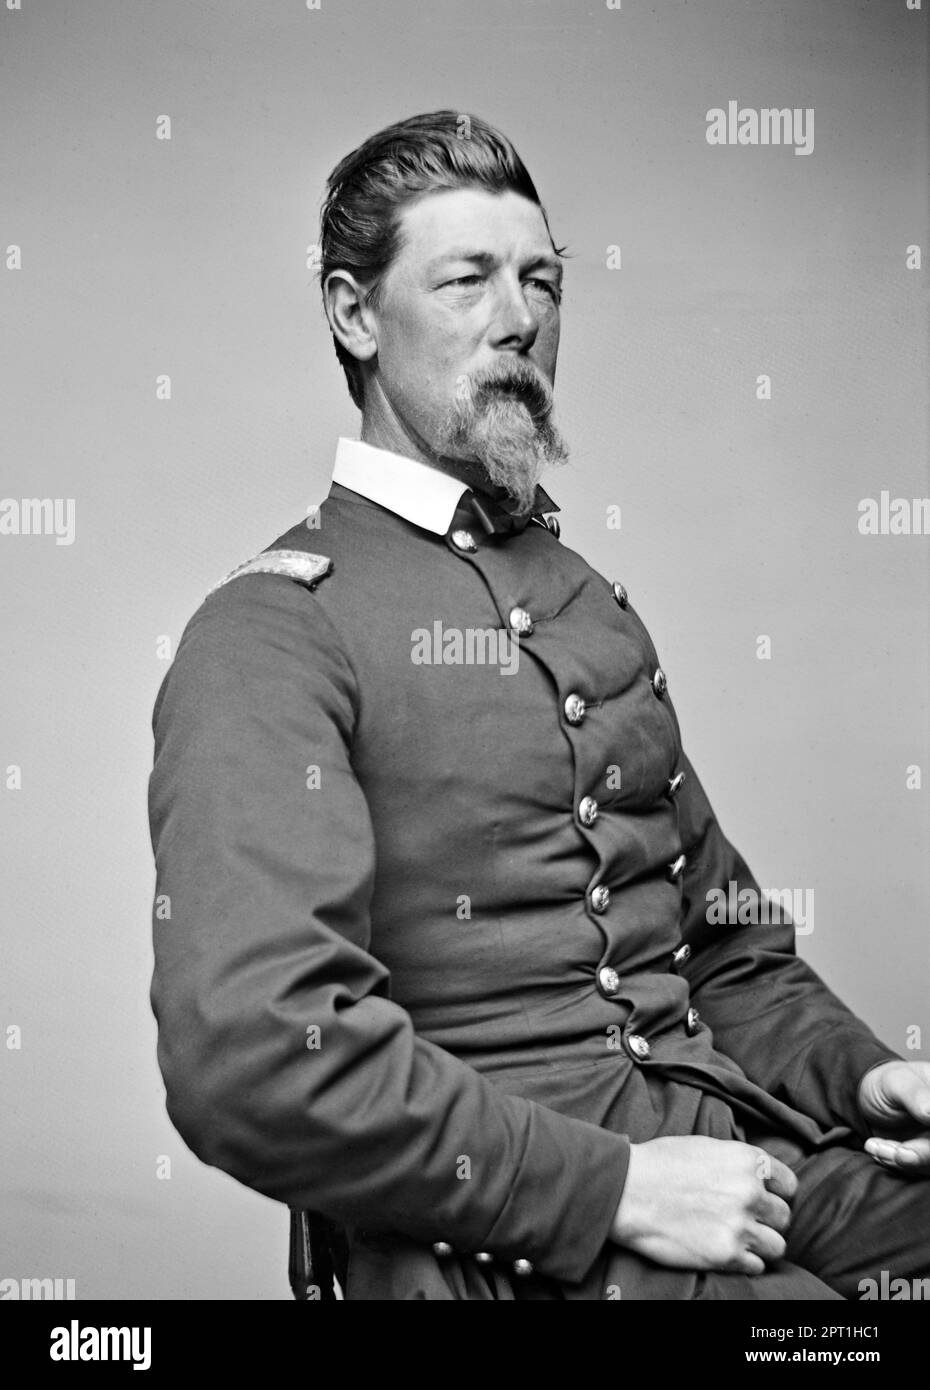 Alexander Shaler. Portrait du général de l'Armée de l'Union et récipiendaire de la Médaille d'honneur, Alexander Shaler (1827-1911) par Mathew Brady Studio, c. 1860-70 Banque D'Images